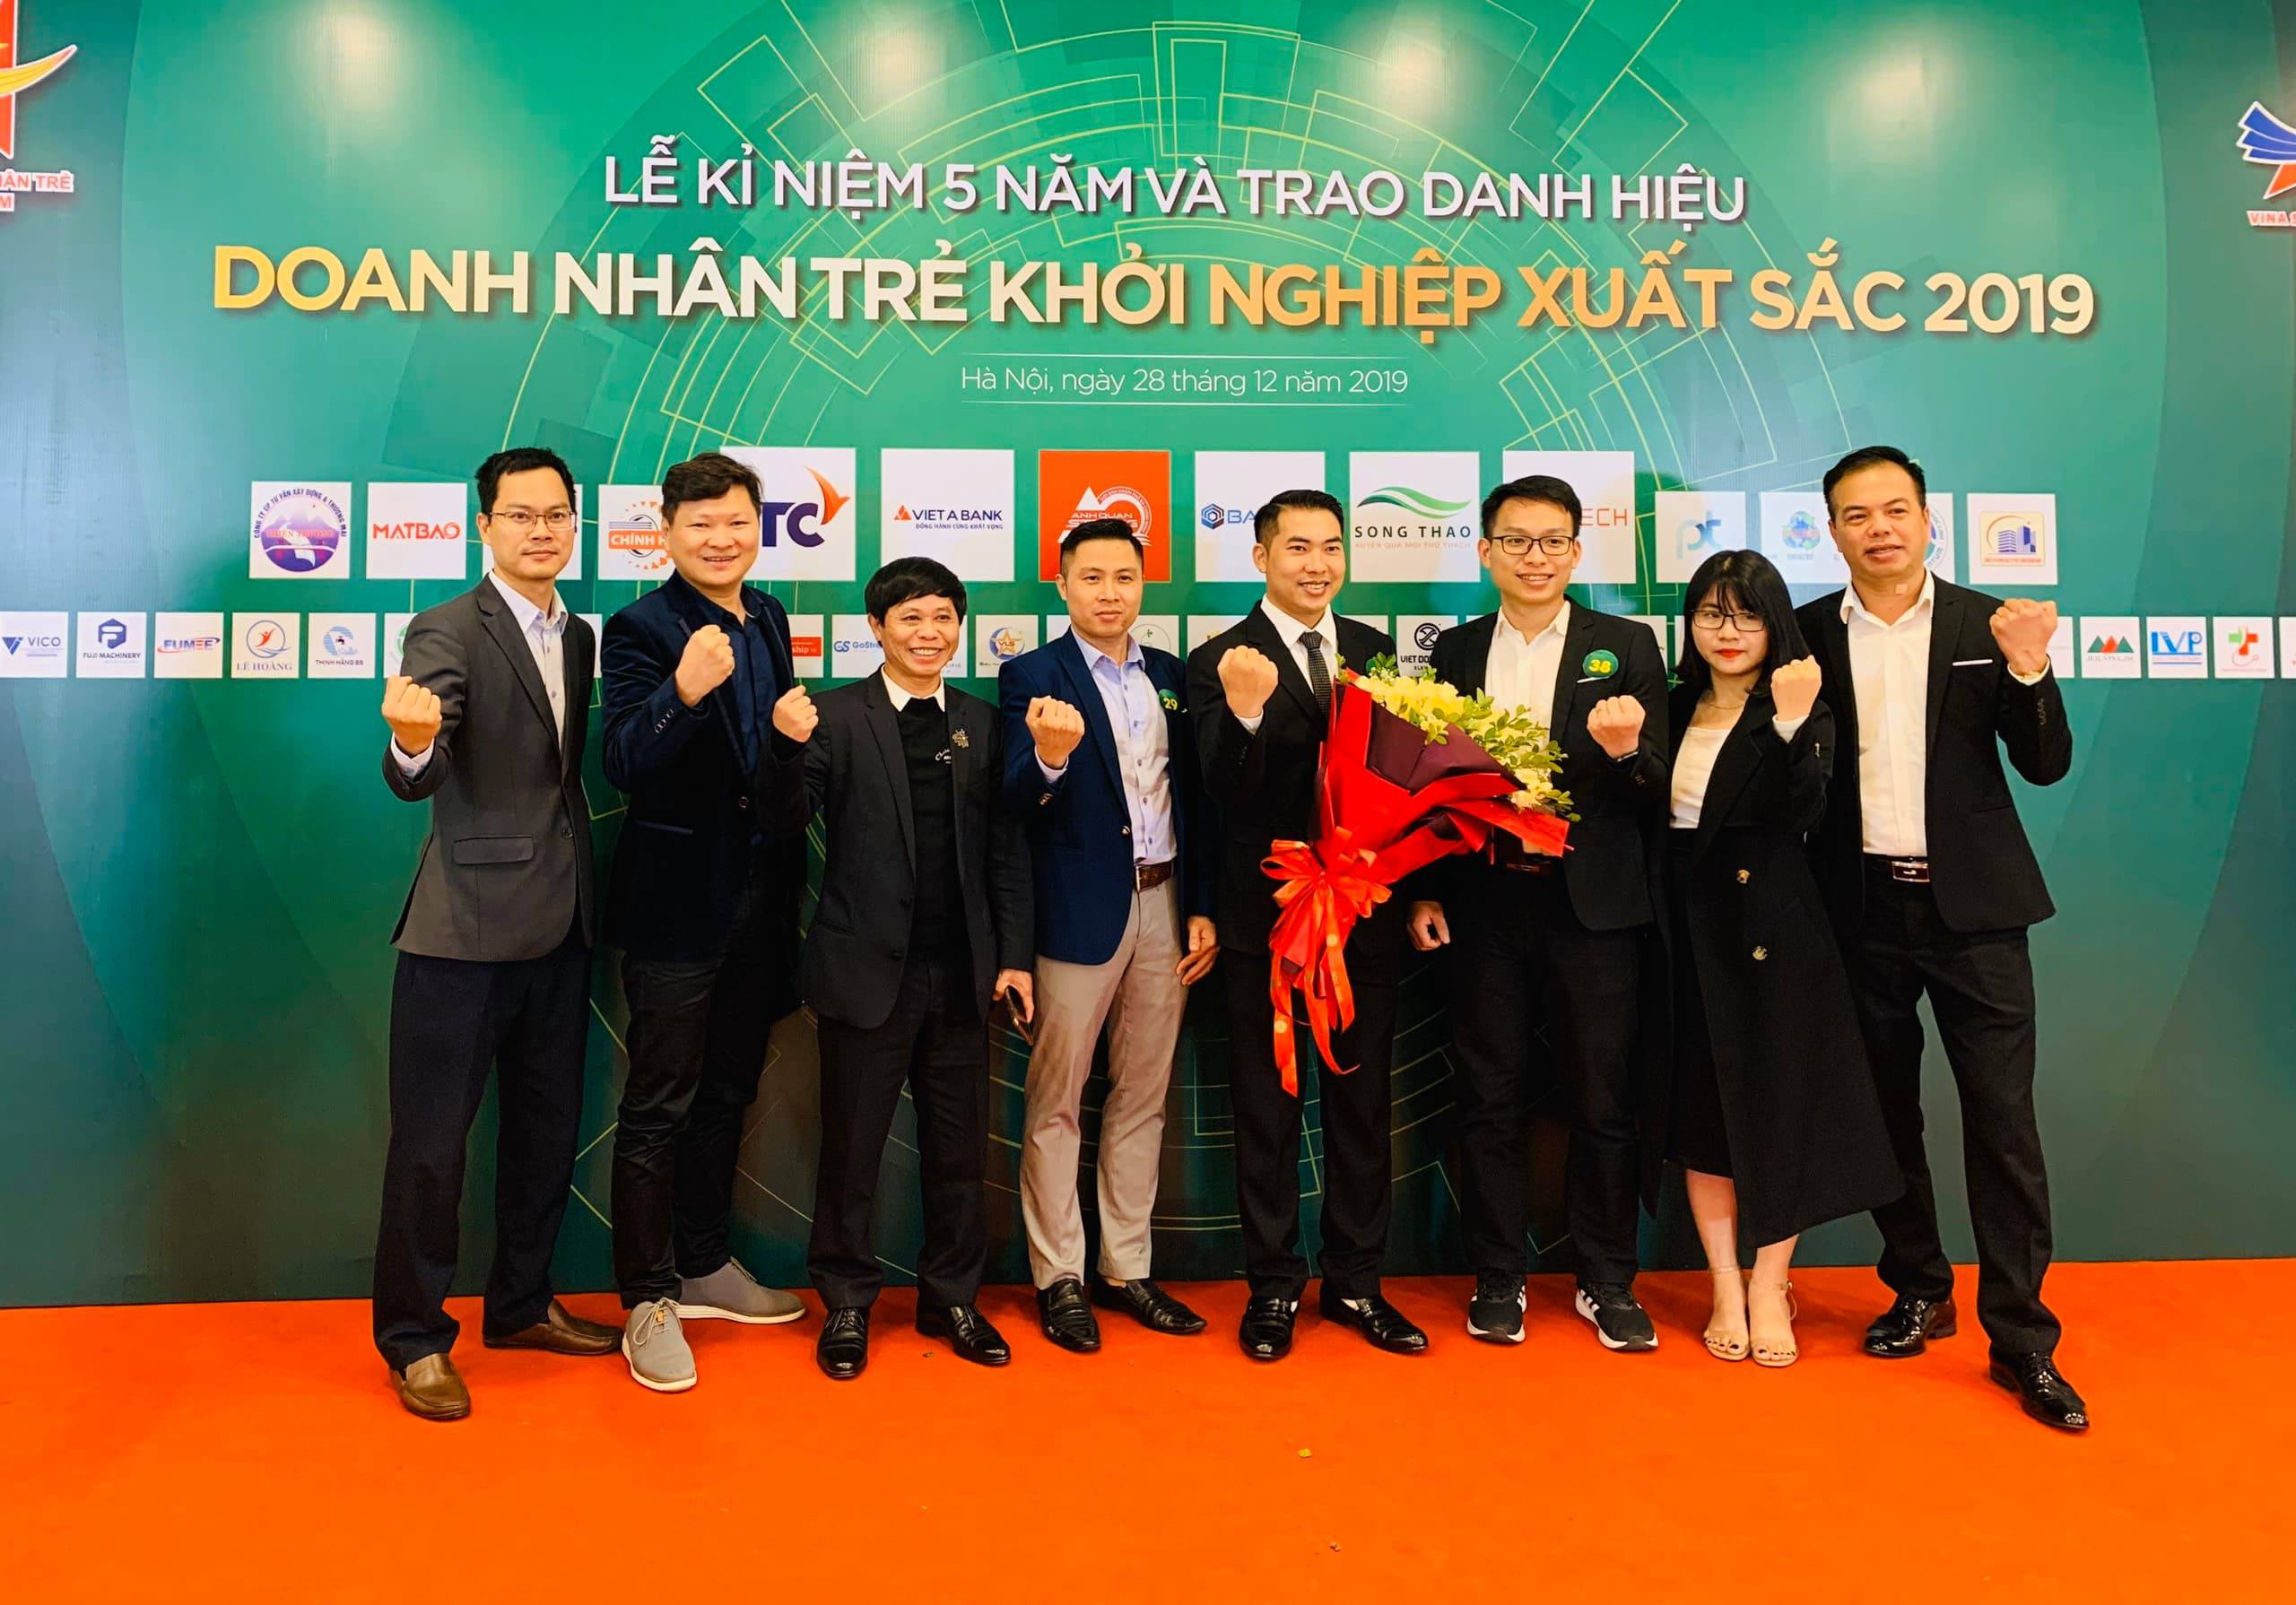 Nghệ An có 3 gương mặt được trao danh hiệu 'Doanh nhân trẻ khởi nghiệp xuất sắc năm 2019